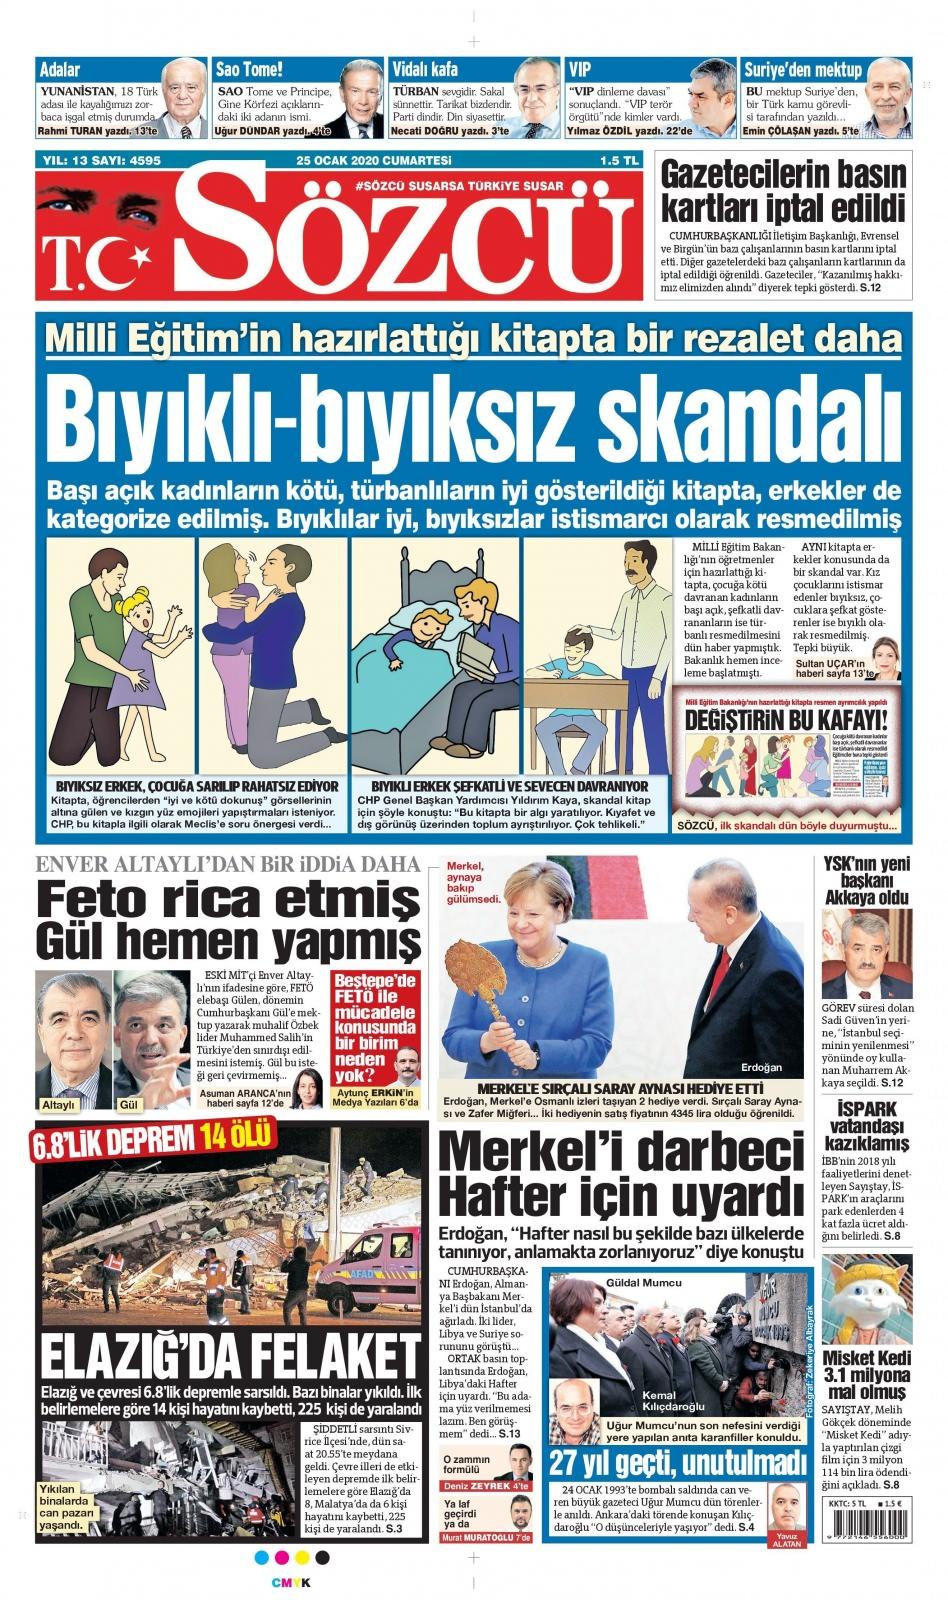 <p>Elazığ'da yaşanan 6.8 şiddetindeki deprem gazete manşetlerine böyle yansıdı.</p>
